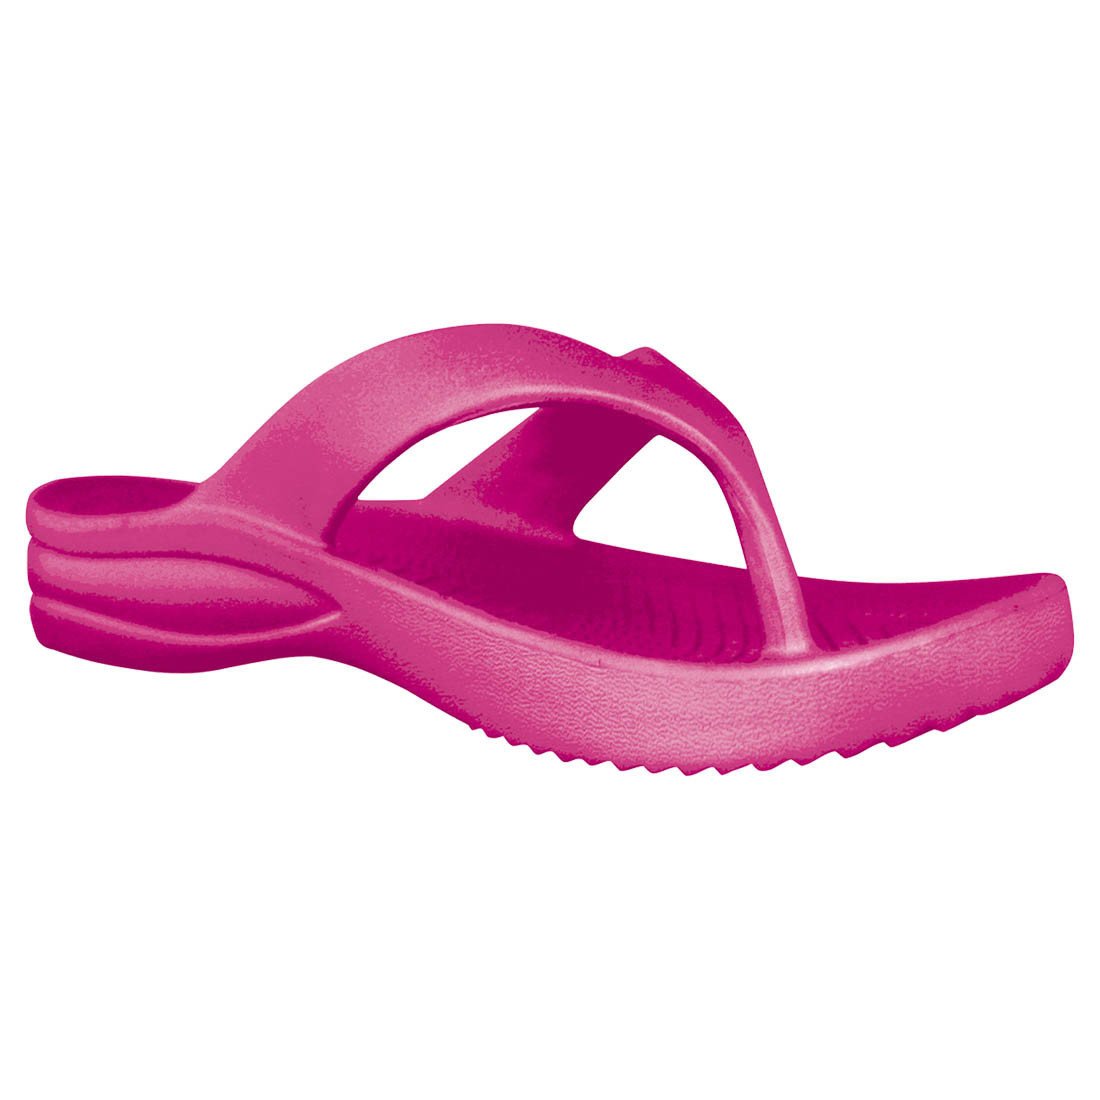 Women's Flip Flops by DAWGS USA